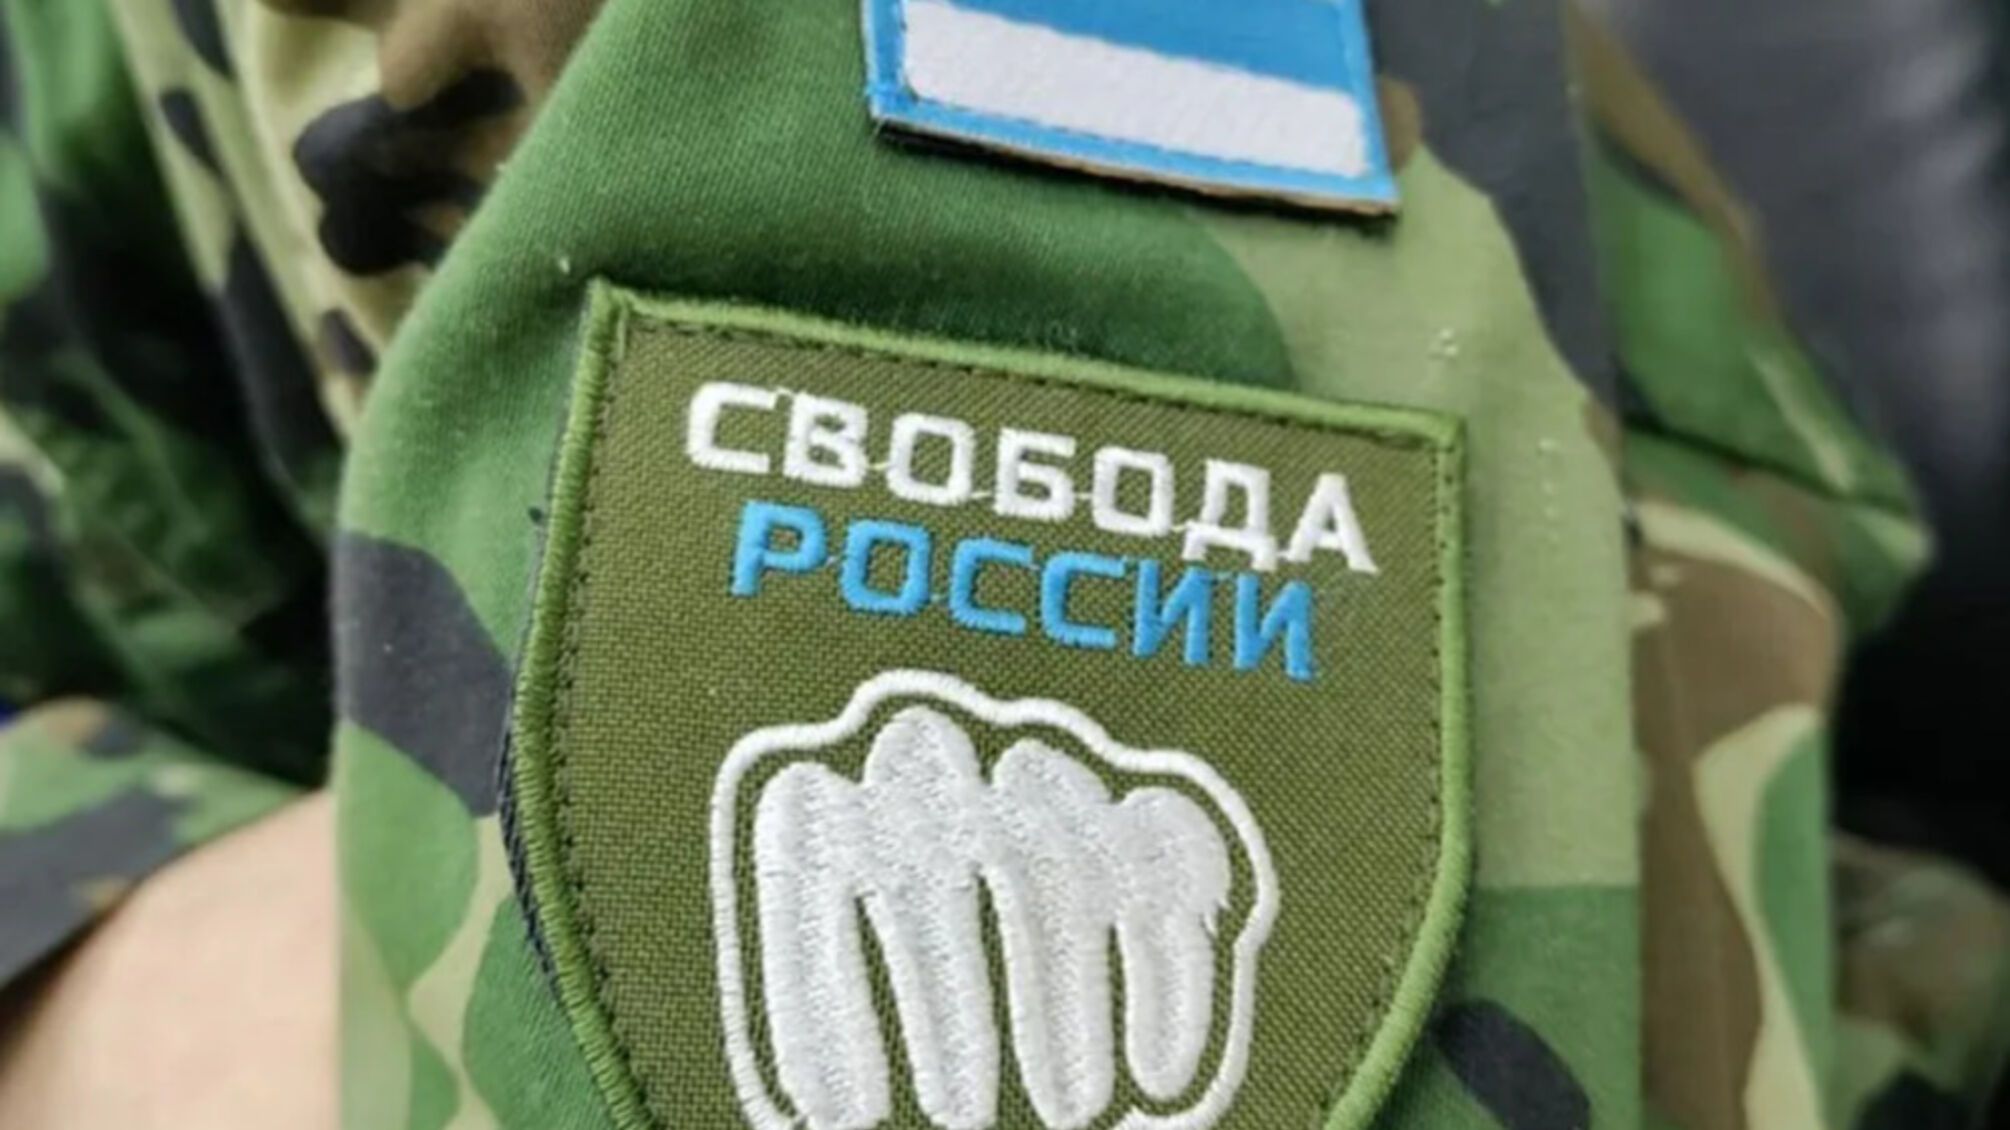 Внутренняя борьба продолжается: в Легионе 'Свобода россии' сформированы новые подразделения